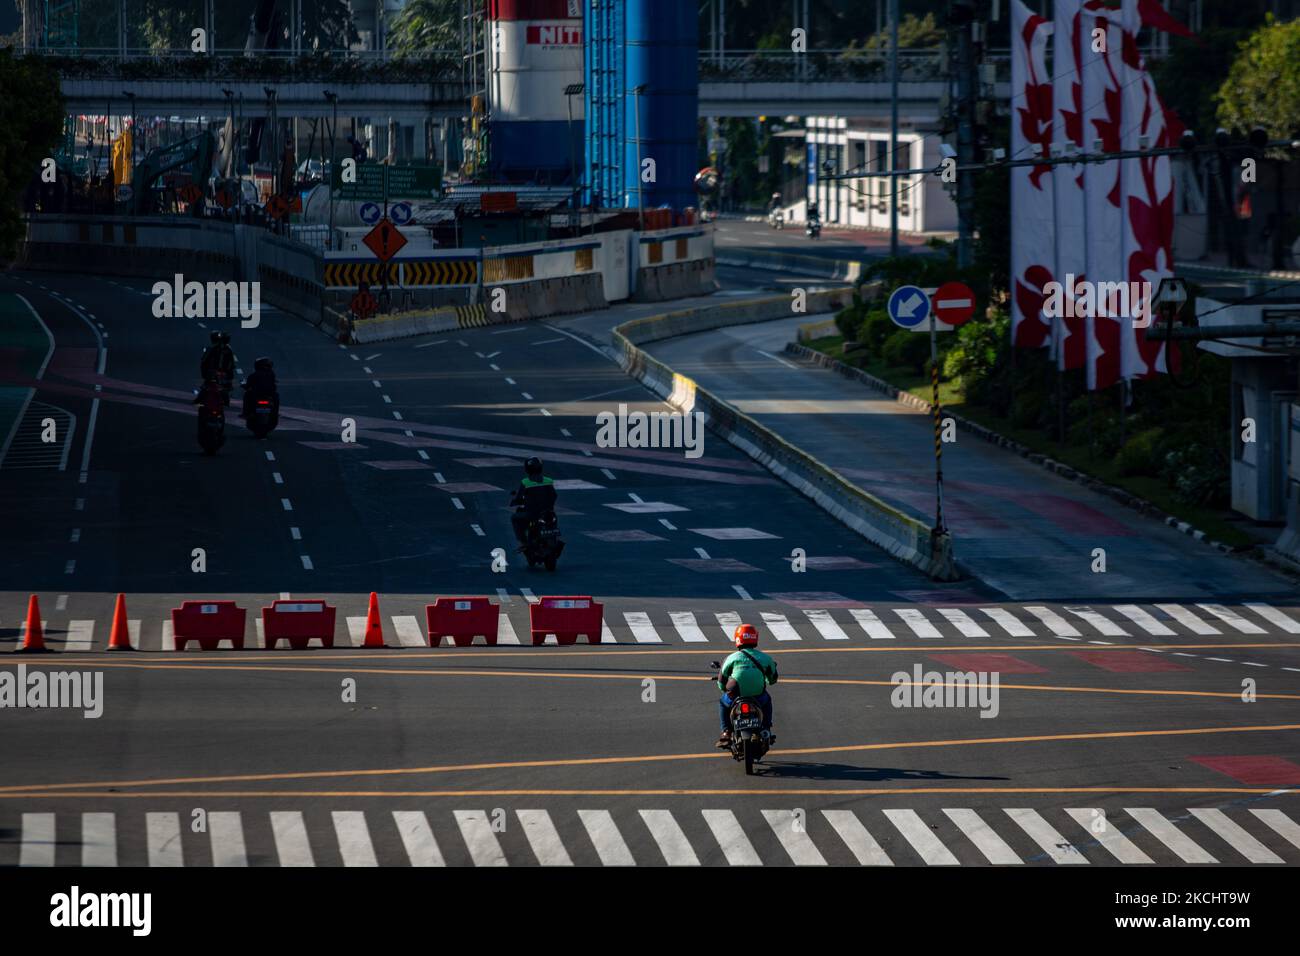 Motorradfahrer versuchen, am 27. Juli 2021 eine Straßensperre in Jakarta zu passieren. Anies Baswedan, Gouverneurin von Jakarta, sagte am Dienstag, dass die in den letzten Wochen verhängte Einschränkung der öffentlichen Aktivitäten positive Ergebnisse gezeigt habe. Am Montag, den 26. Juli, gab Anies Baswedan bekannt, dass sich die aktiven Fälle in der Hauptstadt auf 64.000 reduziert haben. Am 16. Juli meldete die Stadt 113.000 aktive Fälle während des Höhepunktes der Sauerstoffkrise. Bis heute, dem 27. Juli, befinden sich rund 29.000 Jakartaner noch in der Coronavirus-Selbstisolation, 8.600 werden in Krankenhäusern behandelt, 1.400 befinden sich auf der Intensivstation (ICU) und 3.900 Menschen sind es Stockfoto